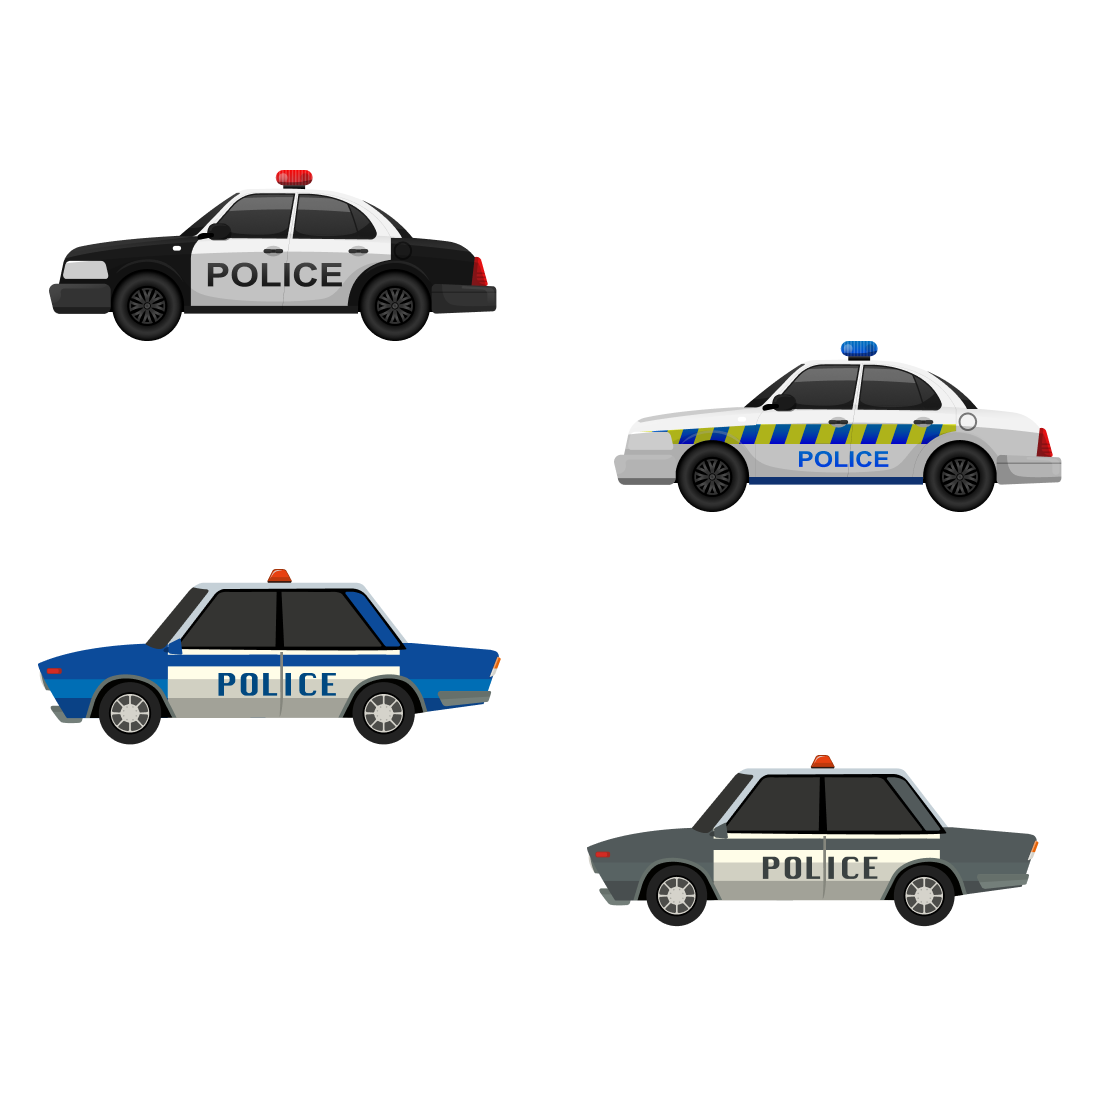 Police Car SVG cover.